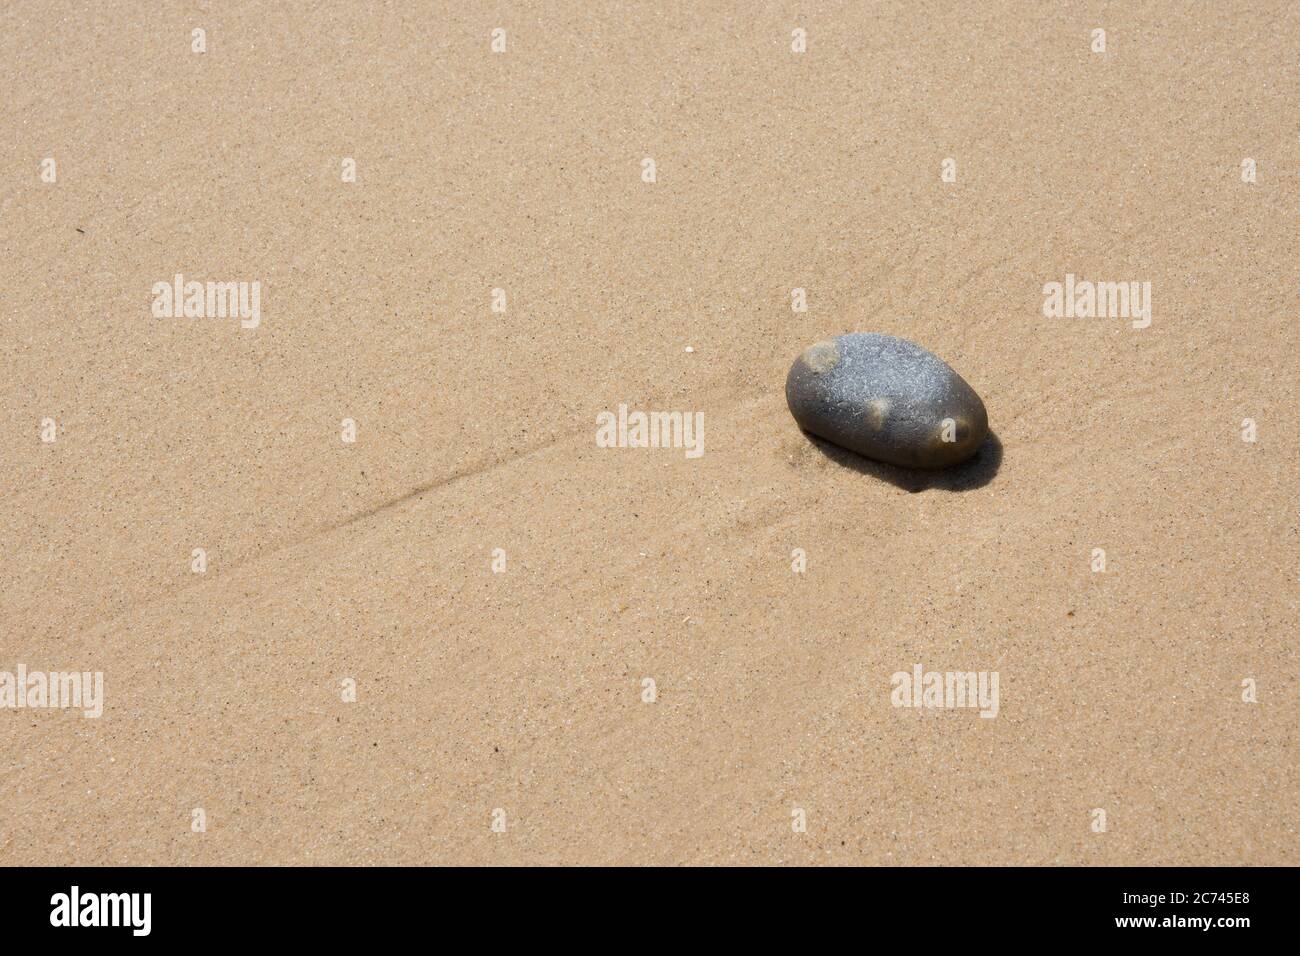 Une plage unique et lisse se trouve sur un fond de sable lisse lavé à l'eau Banque D'Images